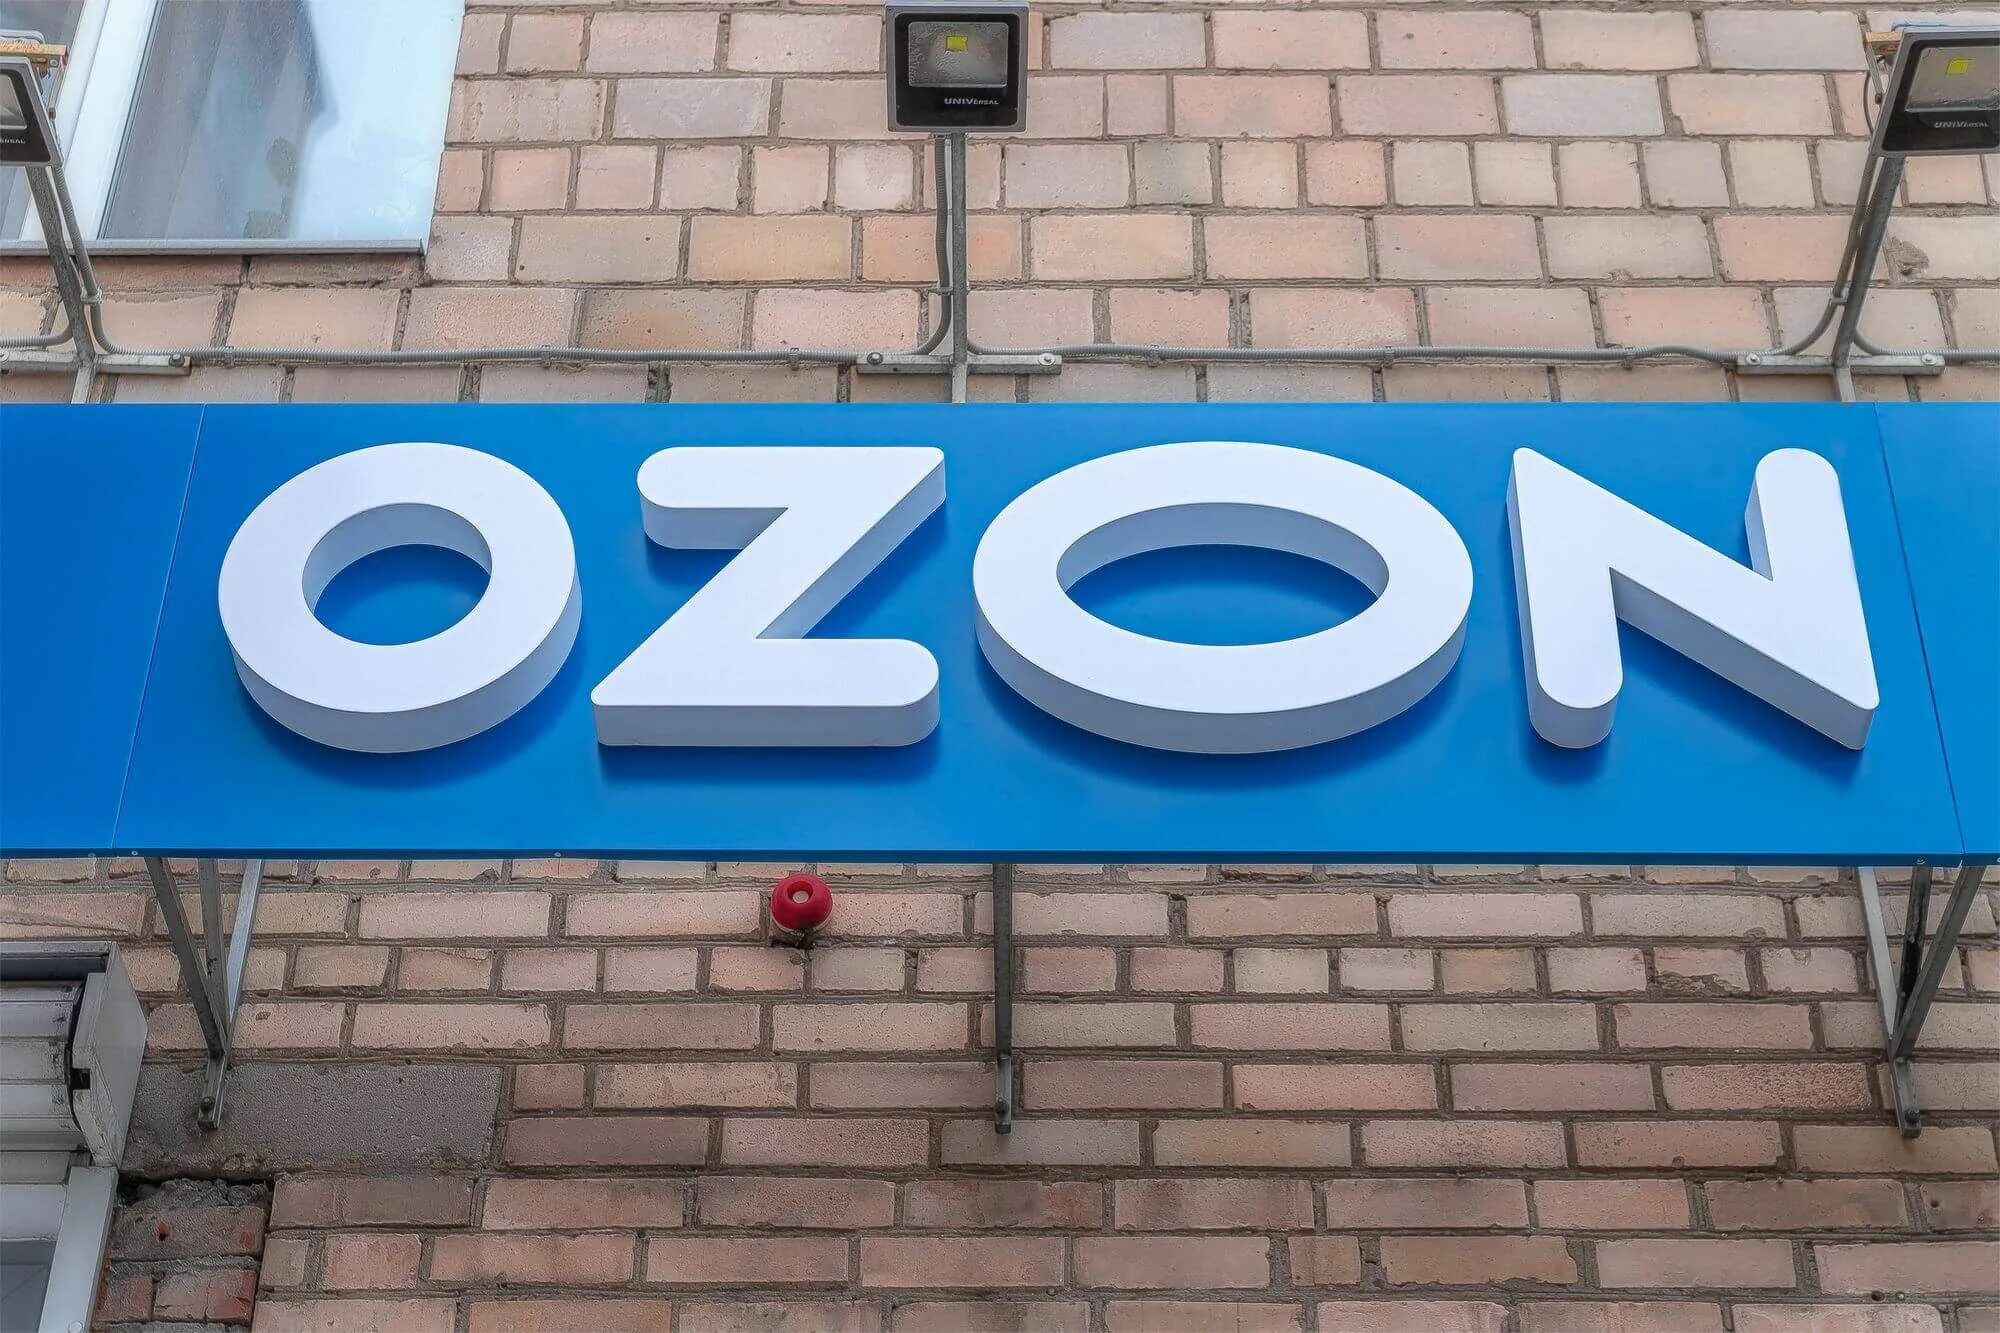 Панель кронштейн озон. Вывеска Озон. Световая вывеска Озон. Вывеска Озон на фасаде. Объемные буквы на здании.